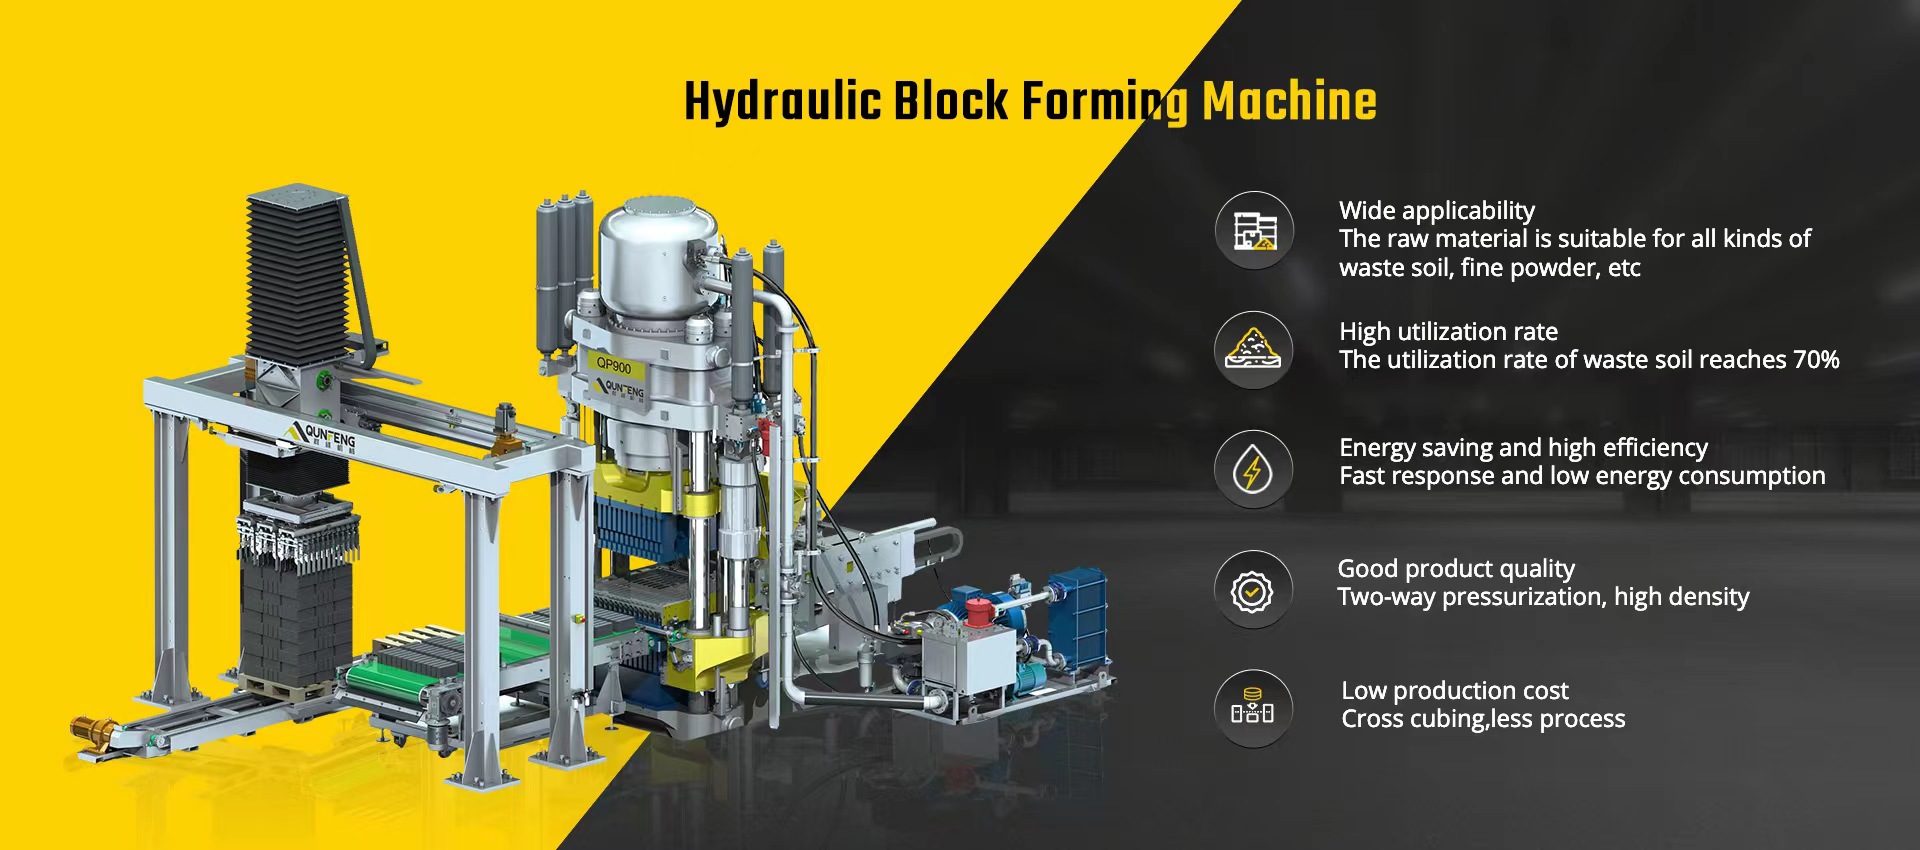 hydraulic block forming machine